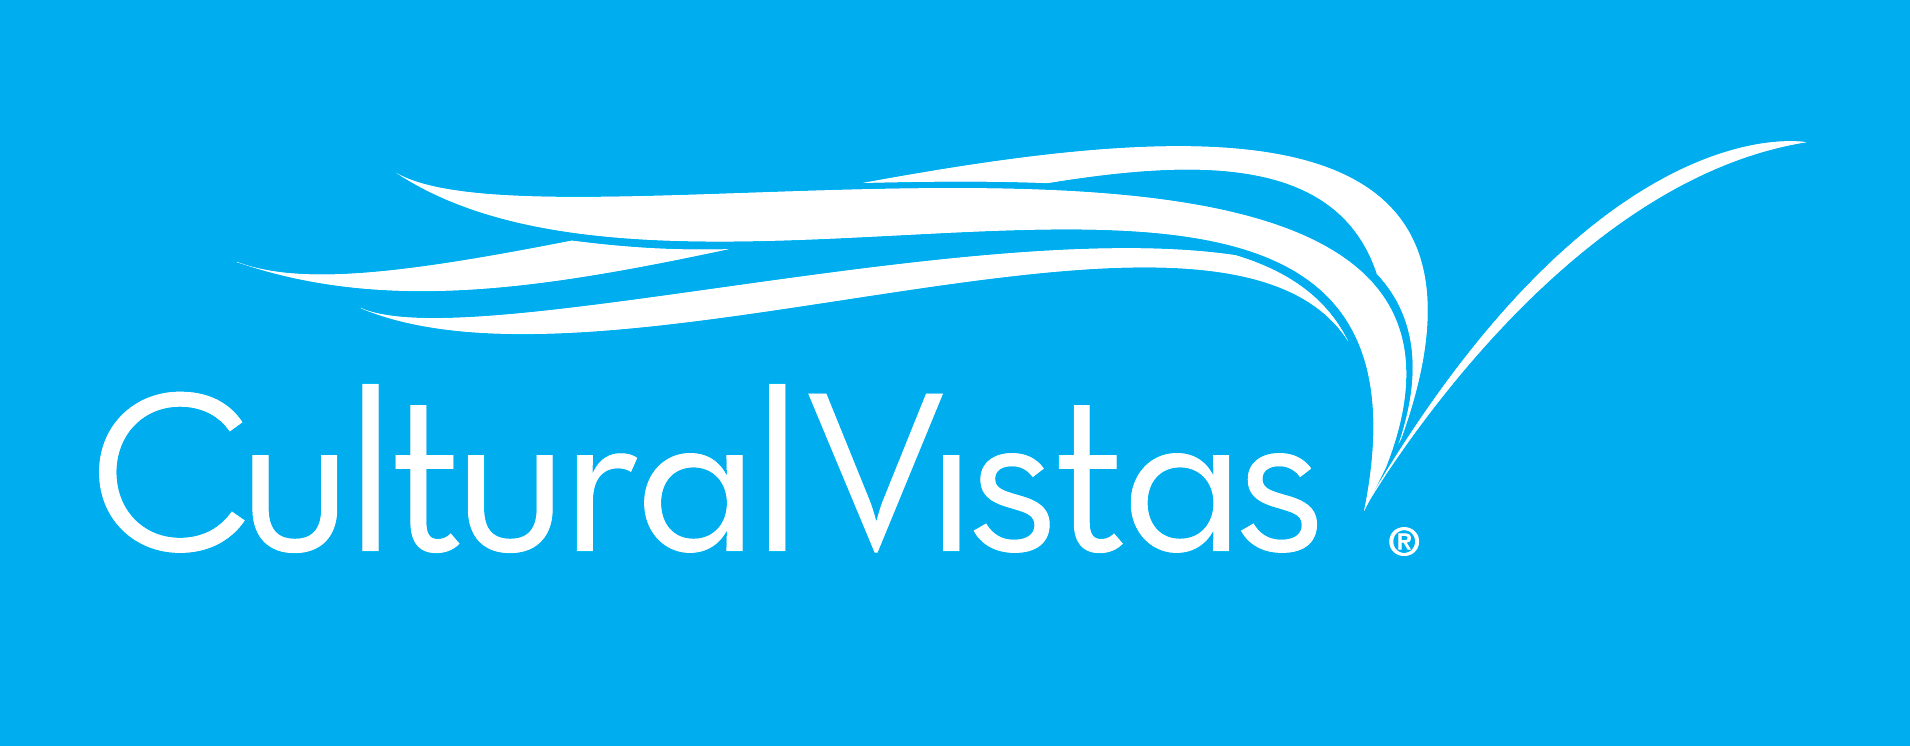 cv-logo.png